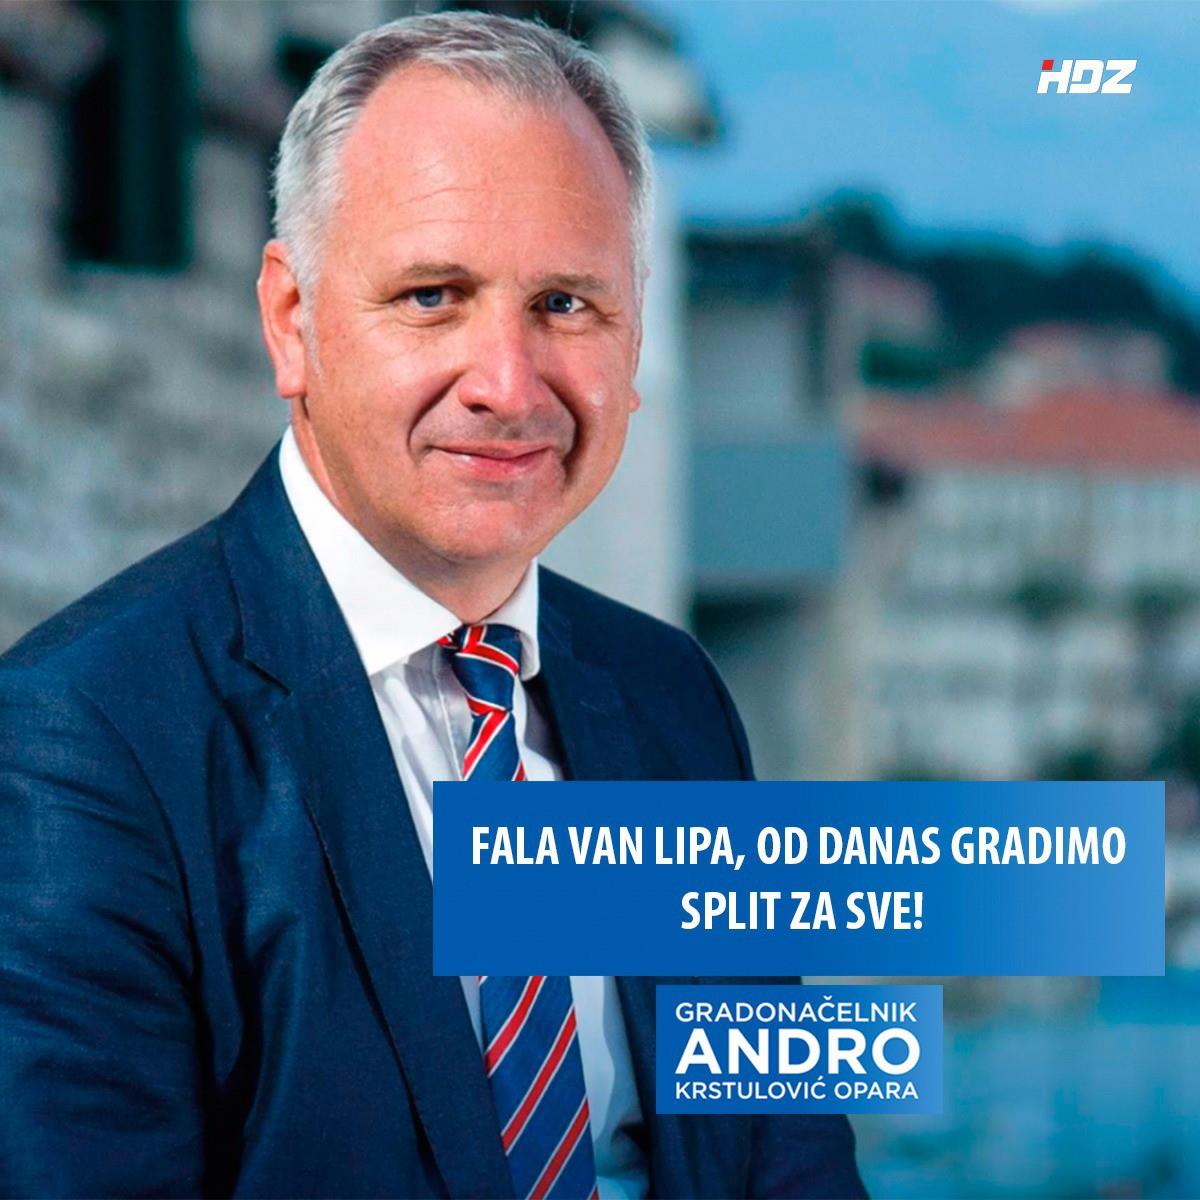 Čestitamo Andri na izboru za gradonačelnika dalmatinske metropole!